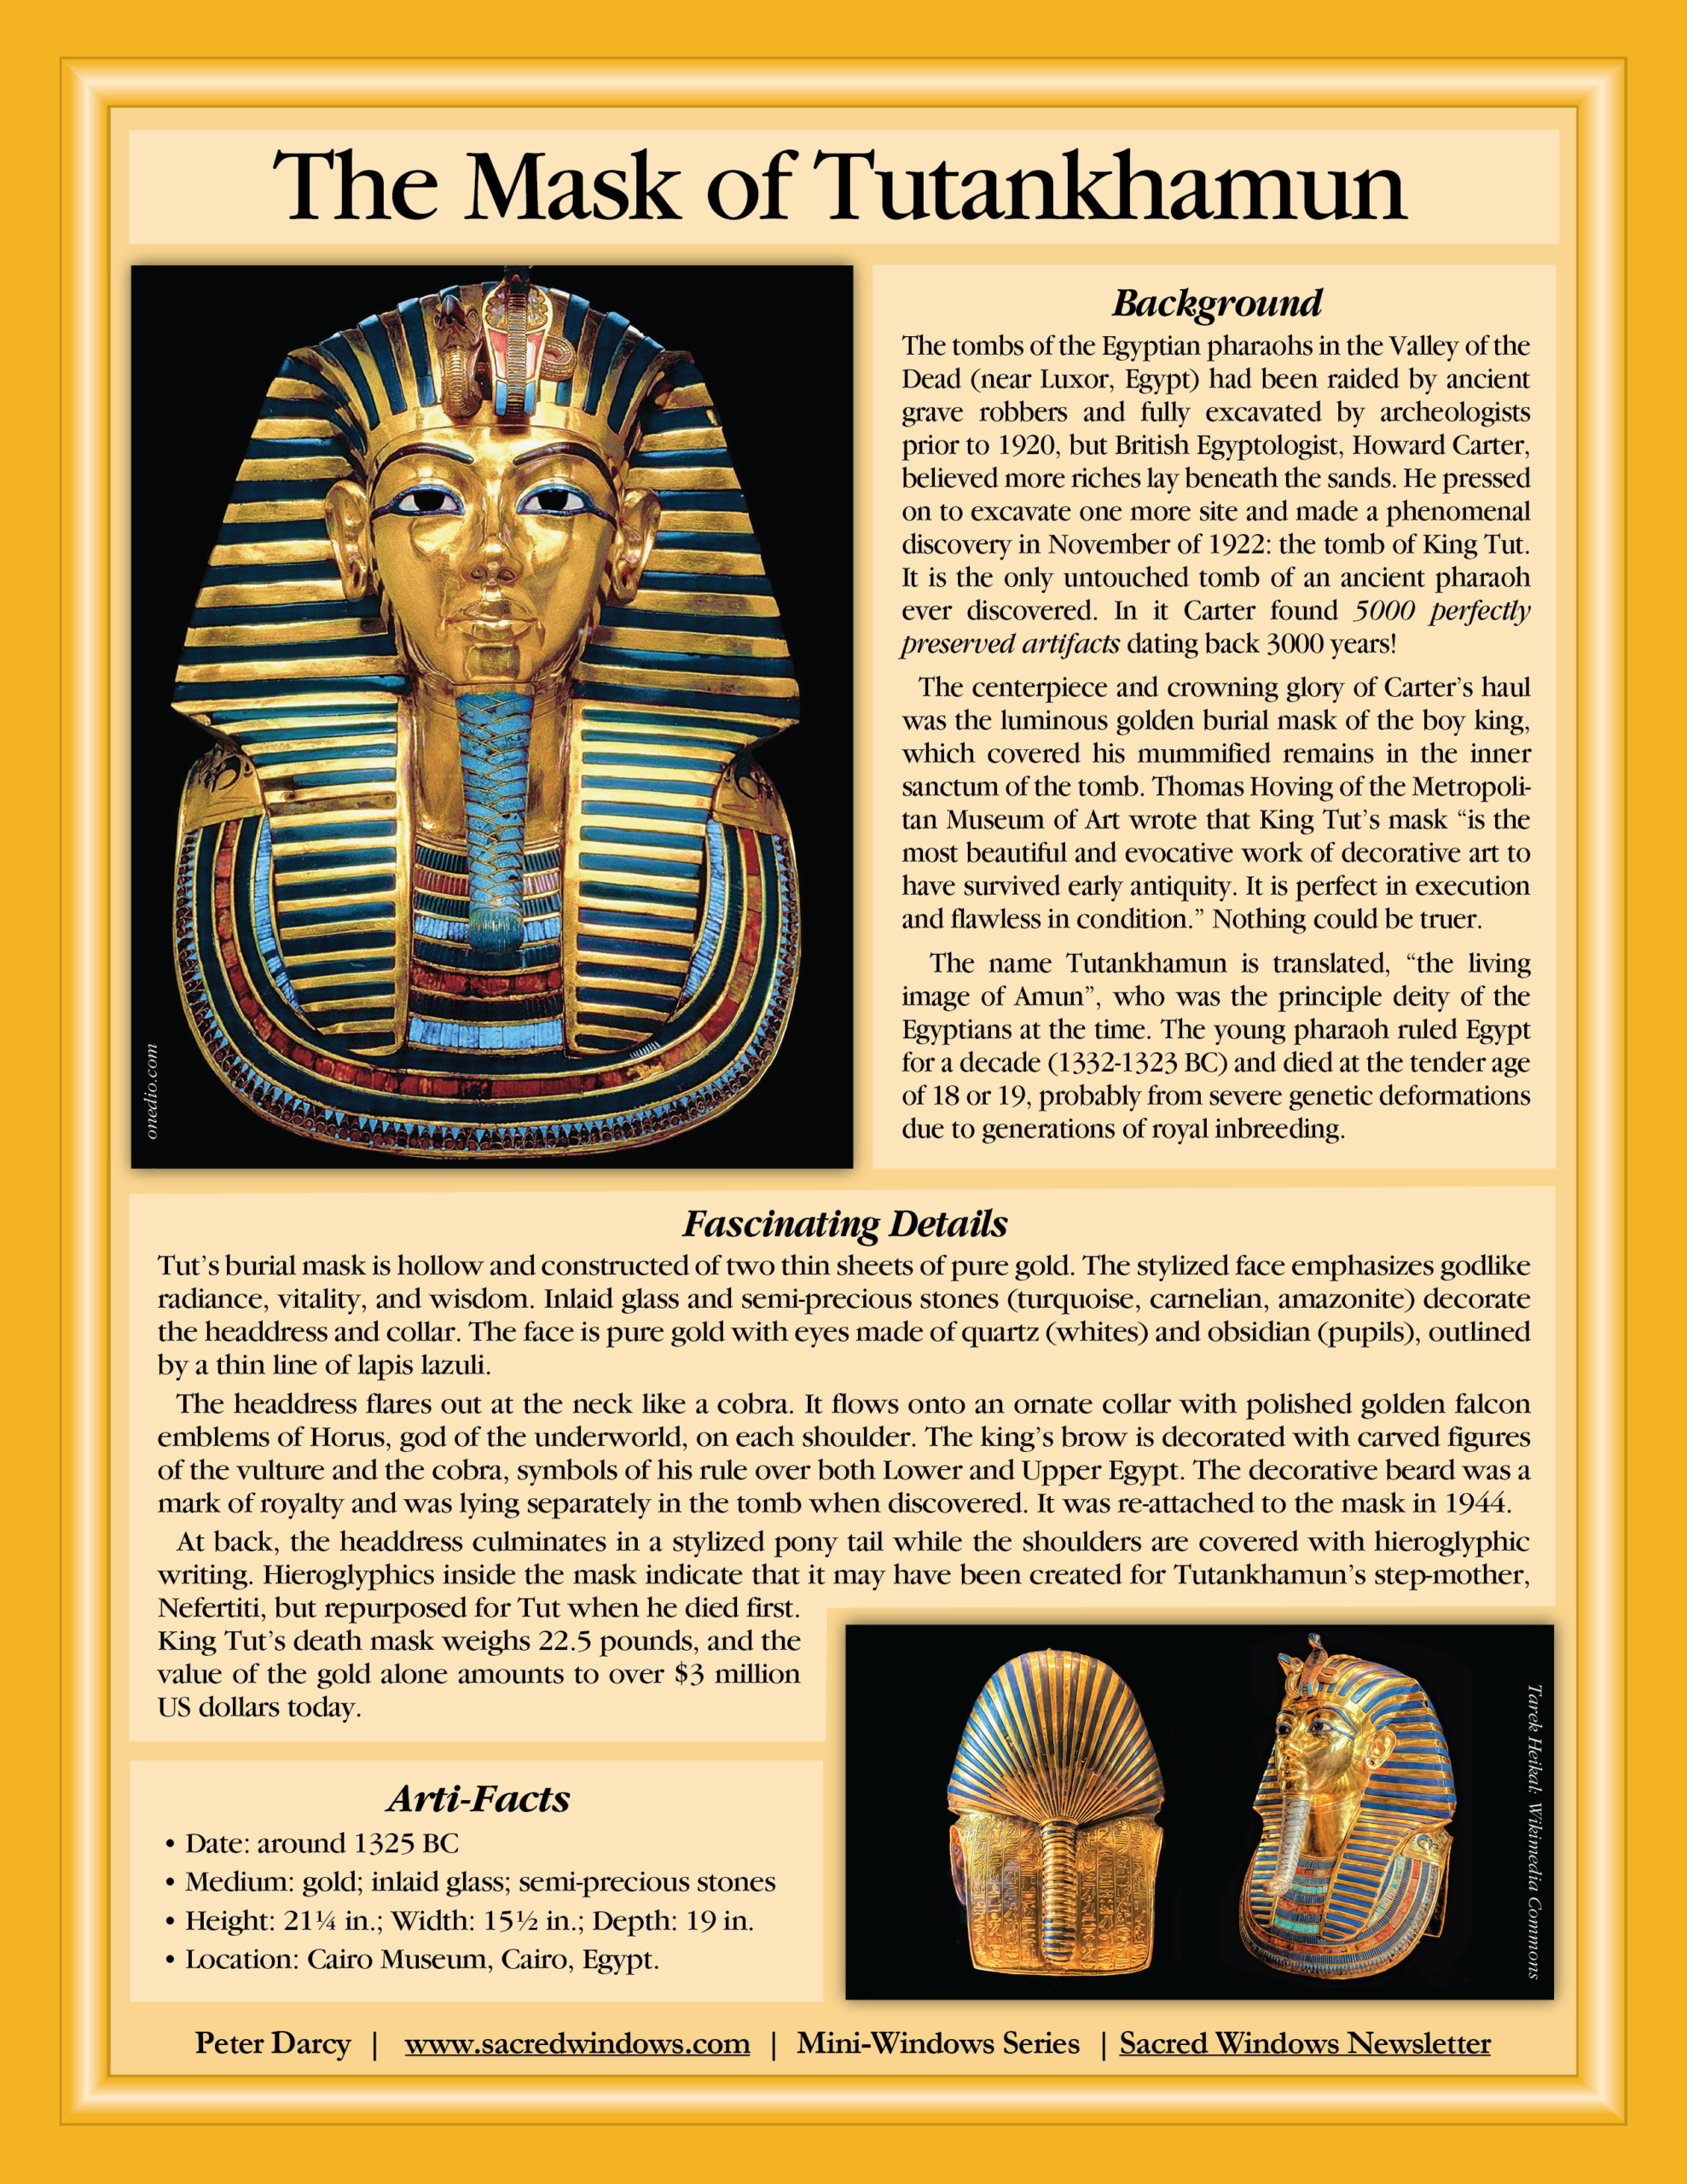 Mini-Window of Tutankhamun mask with text